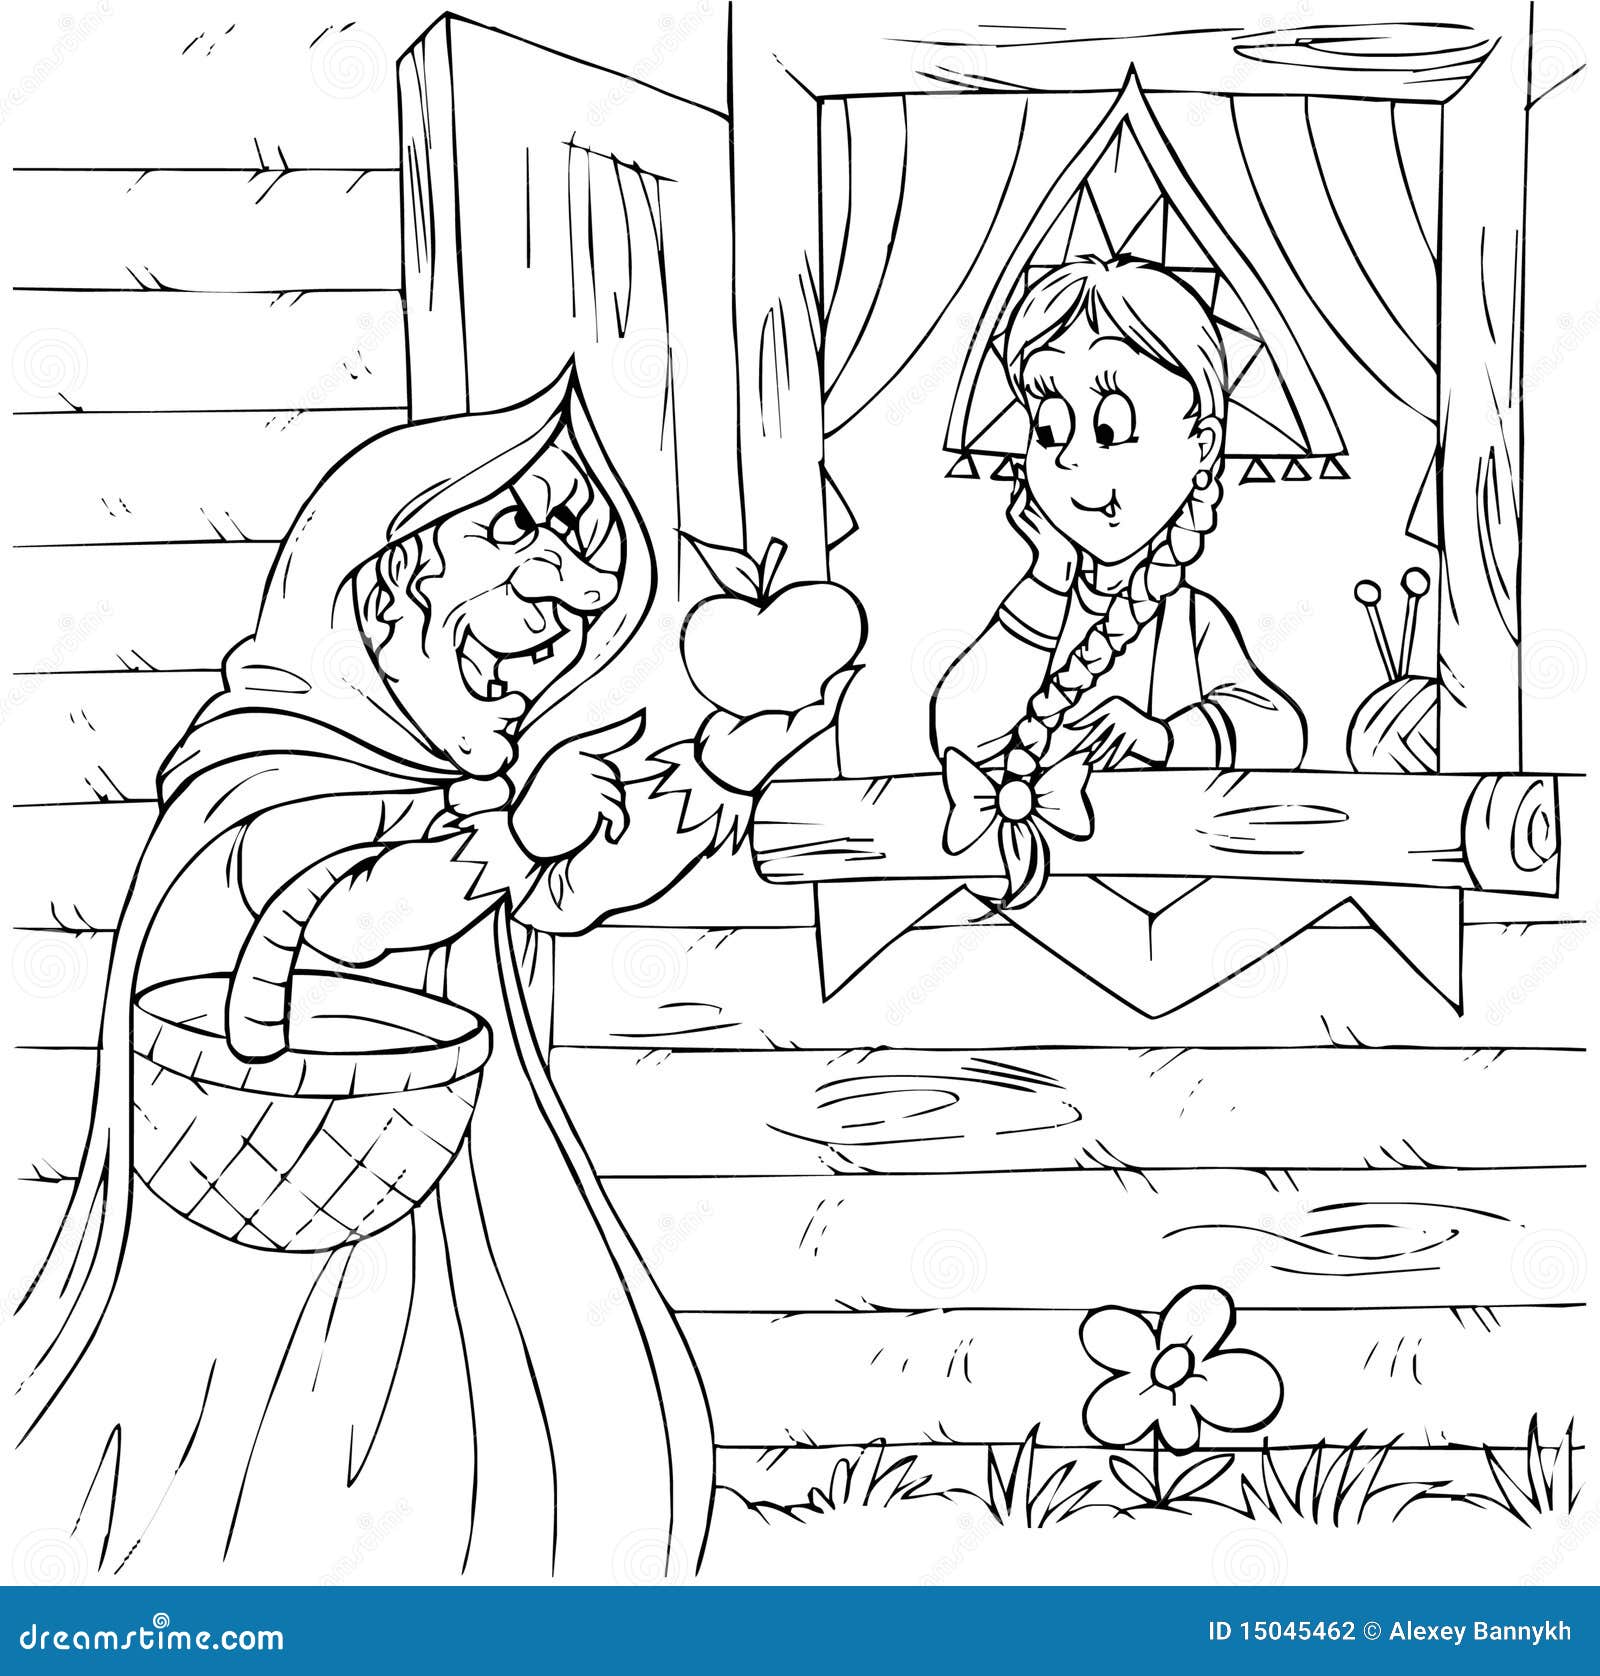 Bruxa e princesa. Ilustração preto e branco (página da coloração): bruxa idosa e princesa nova